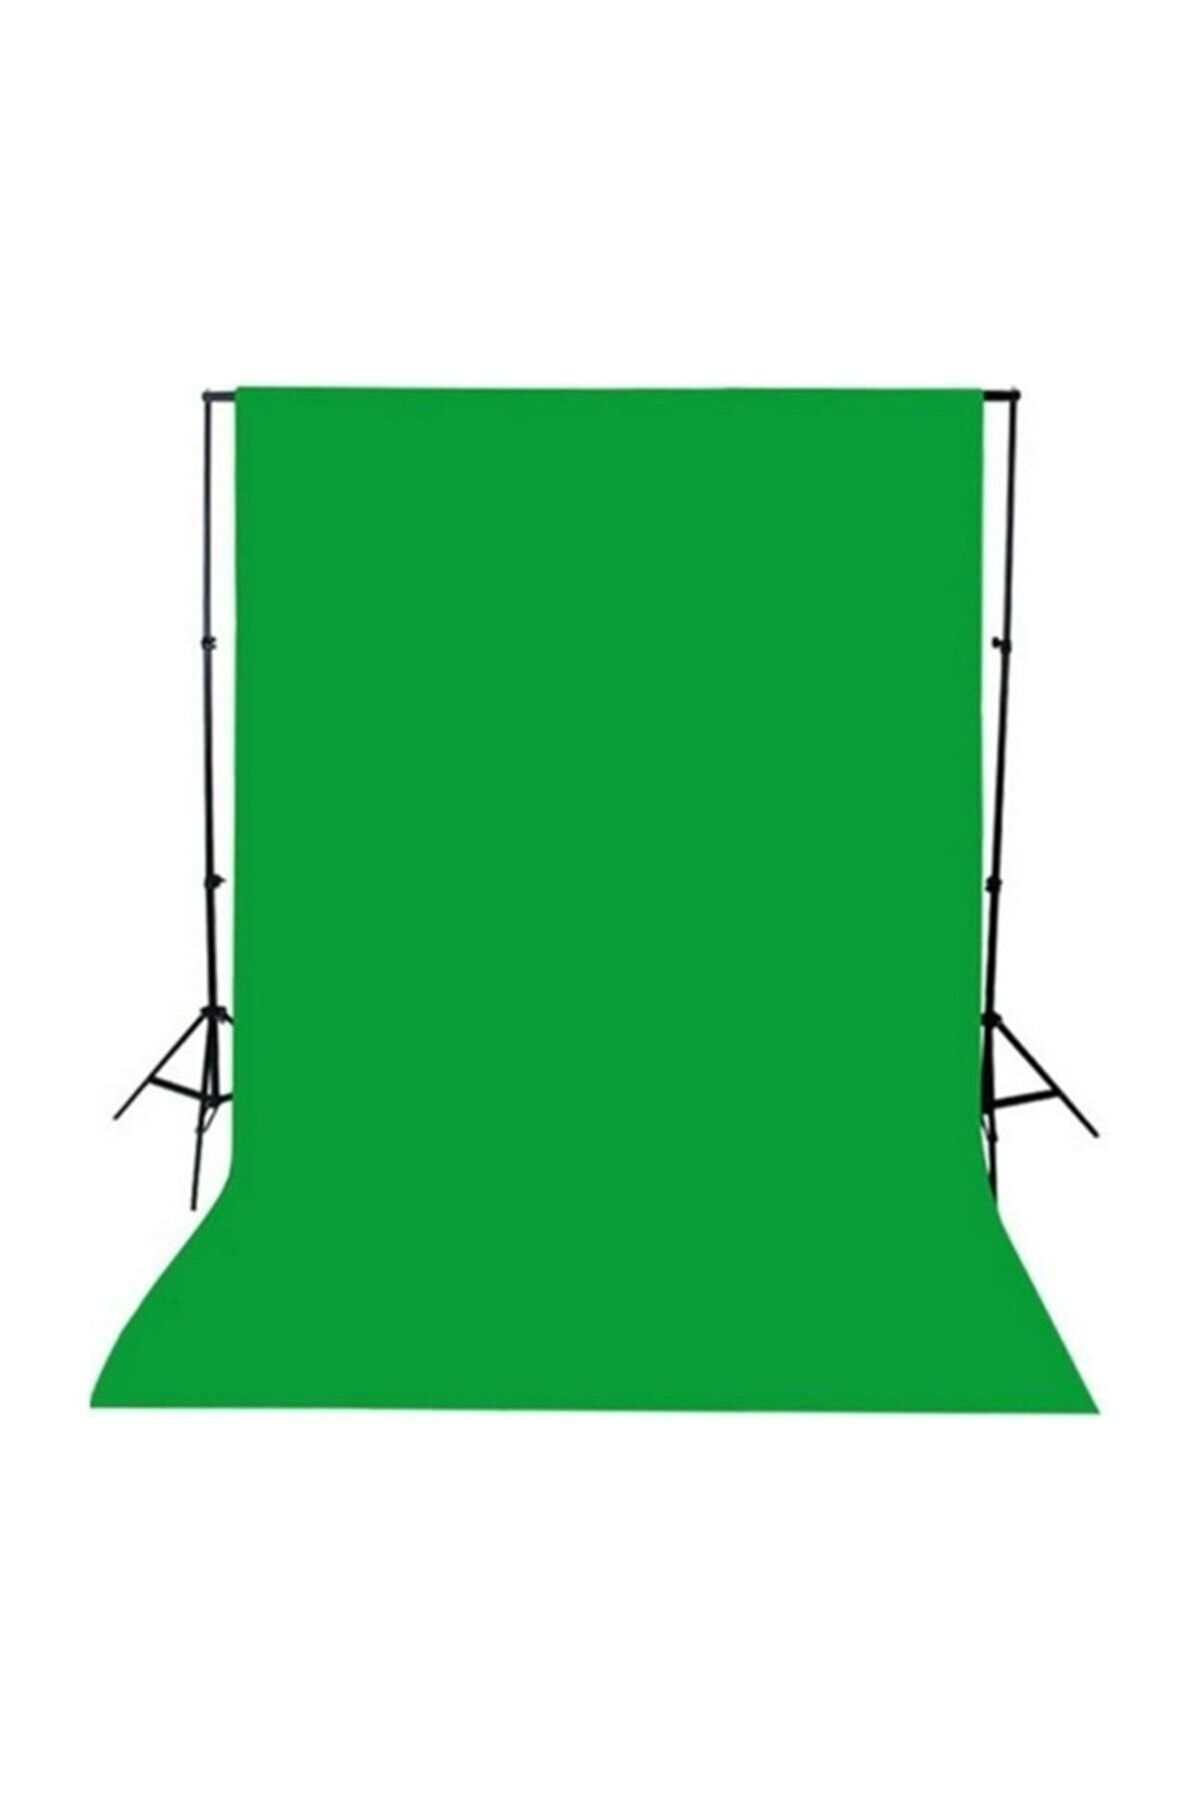 Dymax Yeşil Renk Fon Perde Chromakey Green Screen Greenbox 2x3 Metre Fon Perde